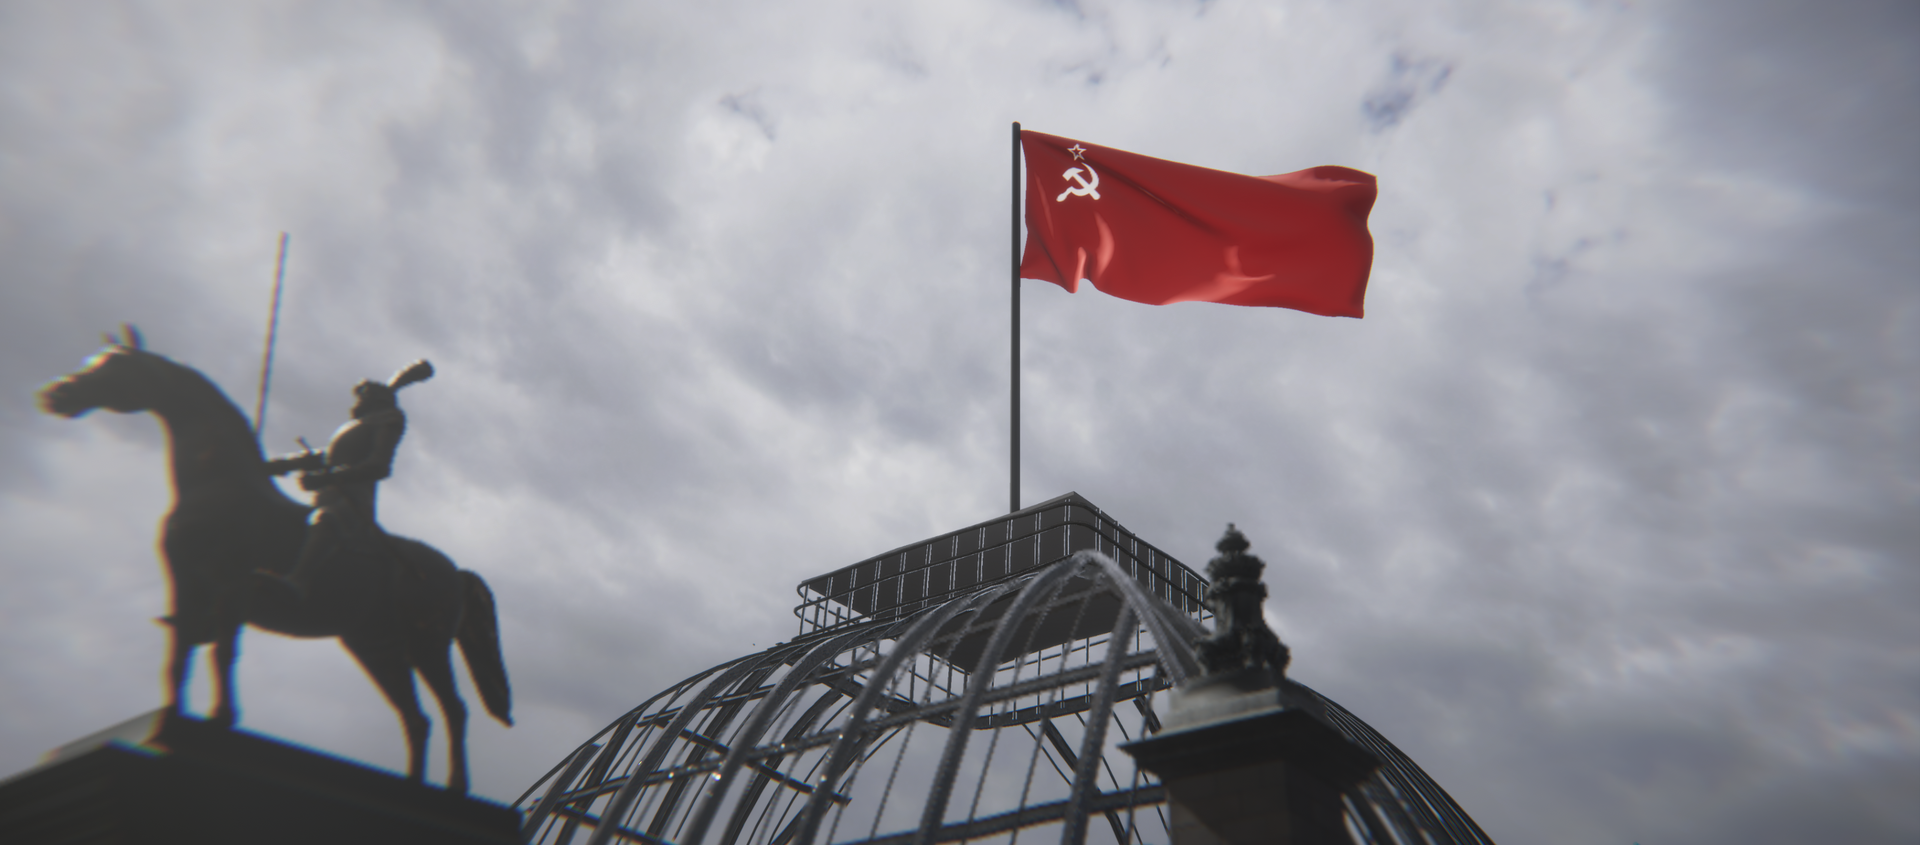 Водружение знамен Красной армии над Рейхстагом доступно в формате VR-реконструкции   - Sputnik Ўзбекистон, 1920, 22.06.2020